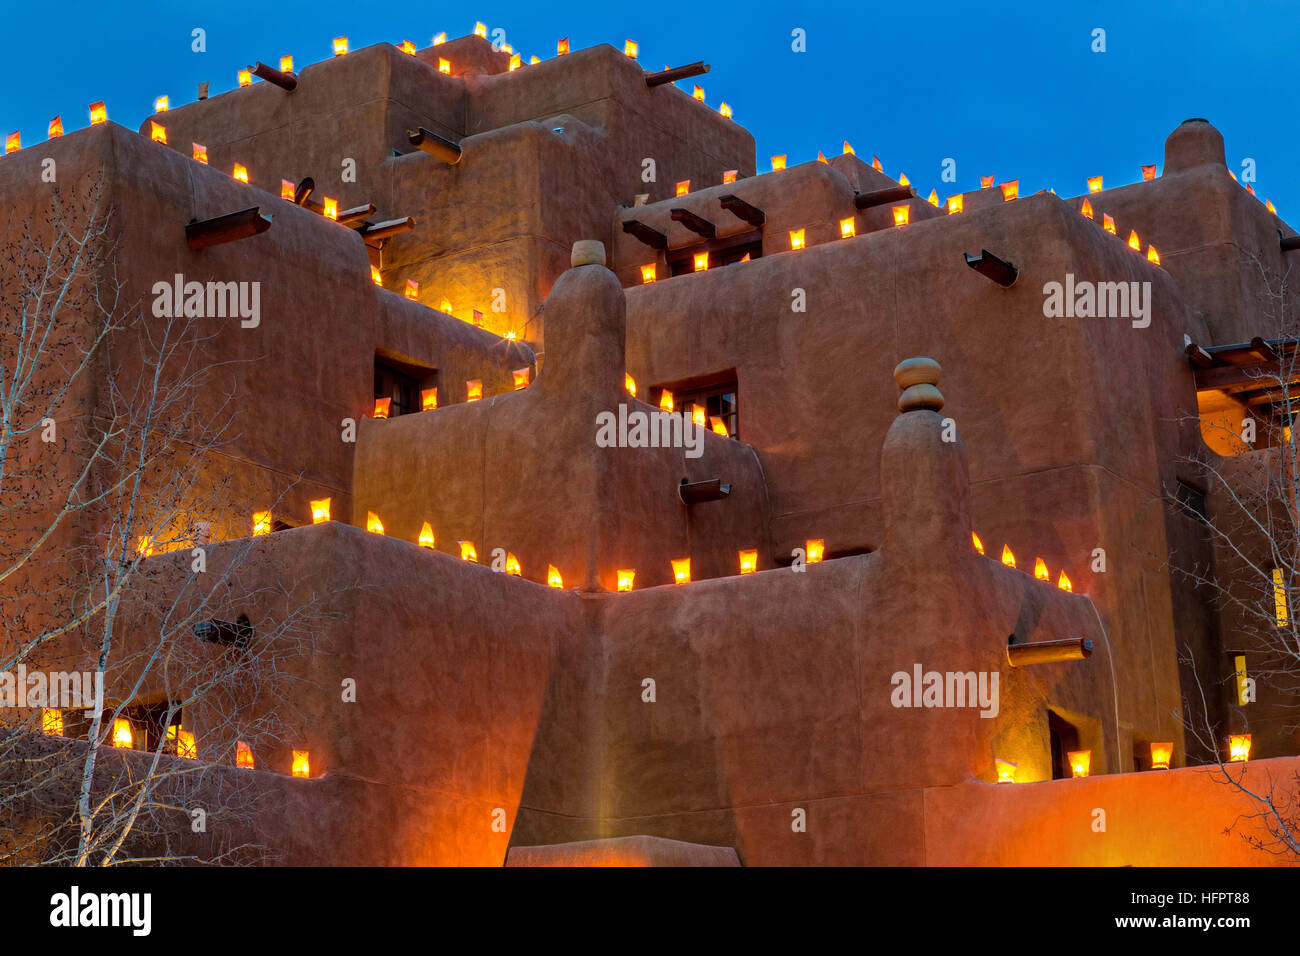 Le style adobe Inn at Loretto est éclairé par des centaines de petites lanternes en papier appelé luminaria pour célébrer la saison des vacances dans le quartier historique le 11 décembre 2015 à Santa Fe, Nouveau Mexique. Banque D'Images